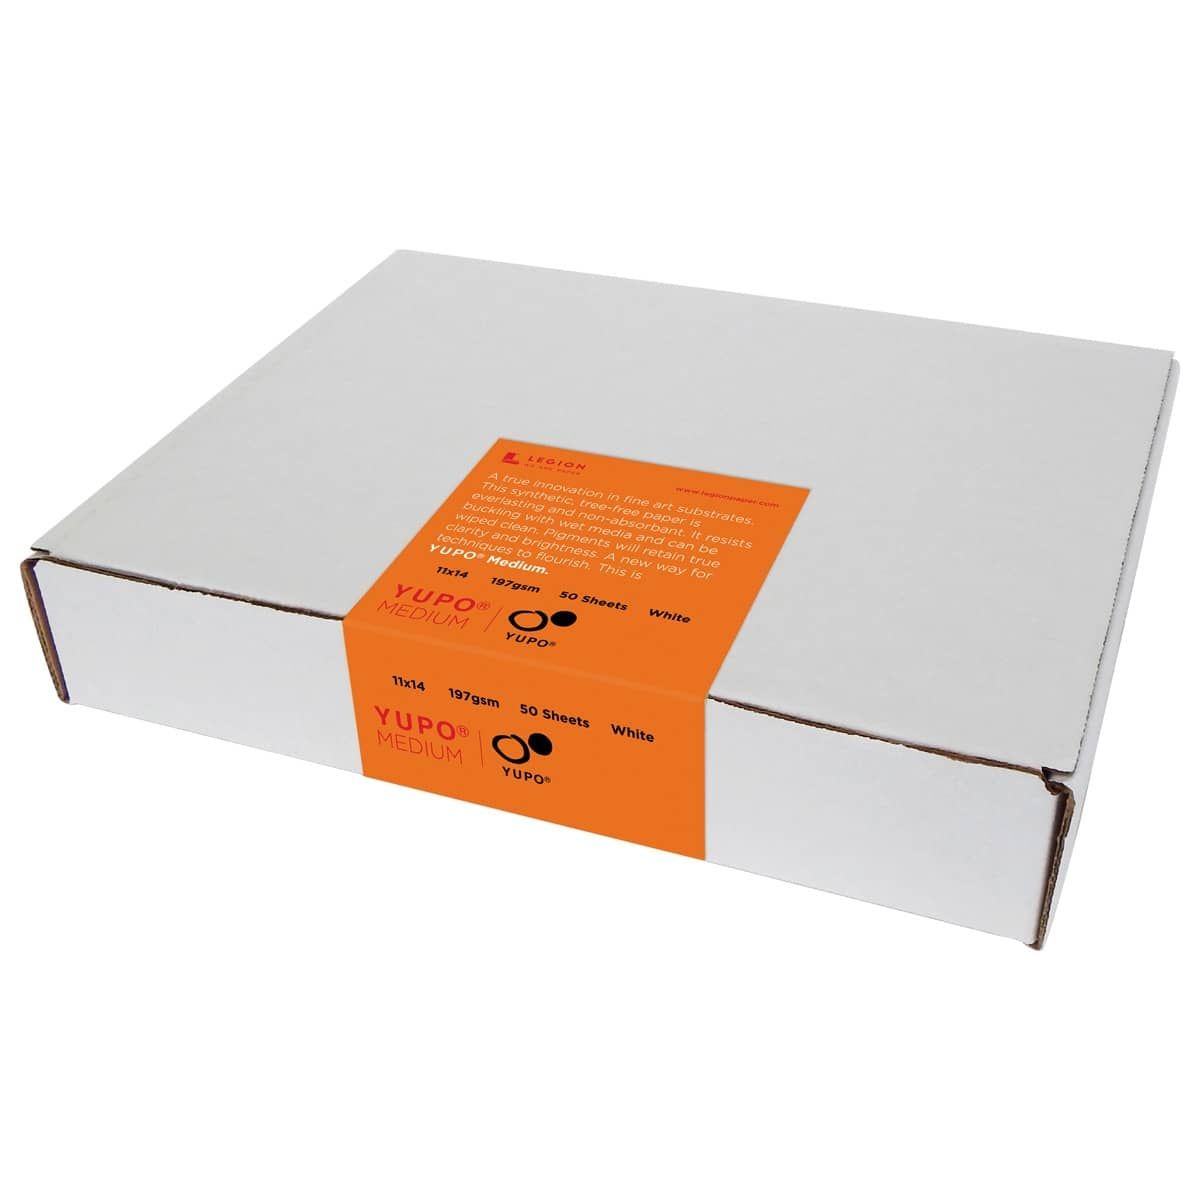 YUPO Multimedia Medium Paper Bulk Pack